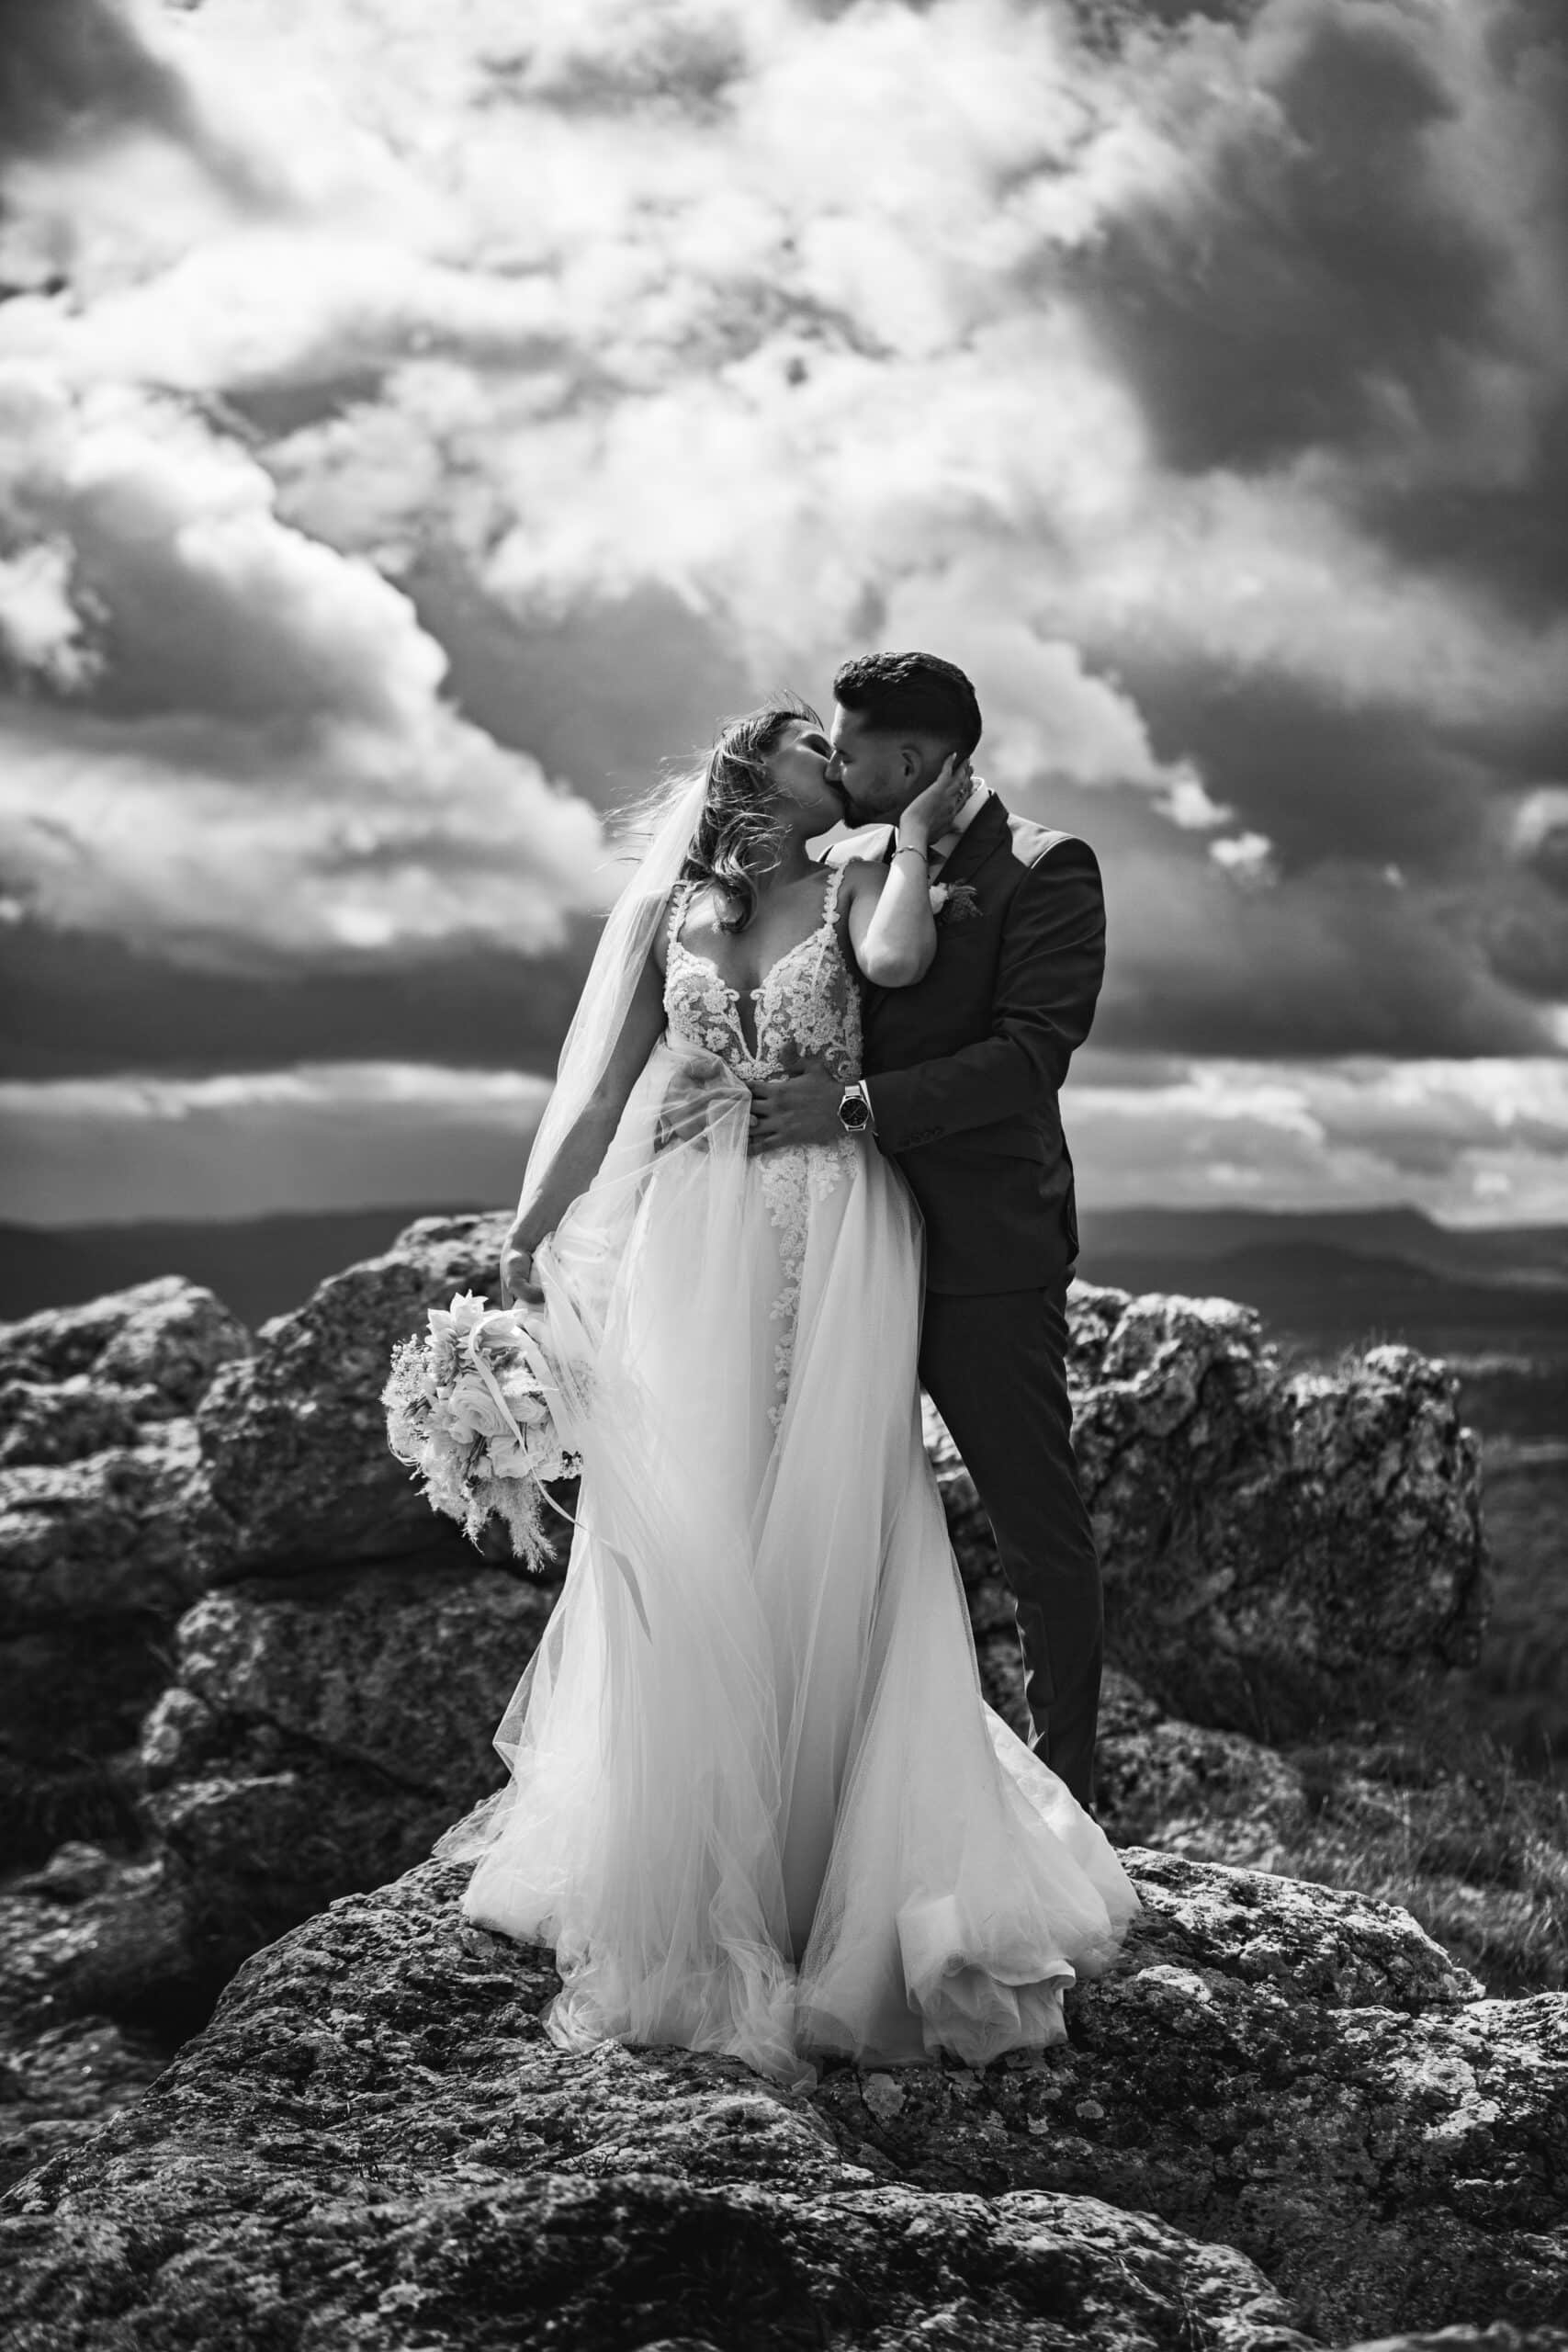 Hochzeitsfotograf Joachim schmitt photography brautpaar hohenstaufen berg hochzeitsbild dramtik berg regenwolken IMGL9617 Bearbeitet scaled